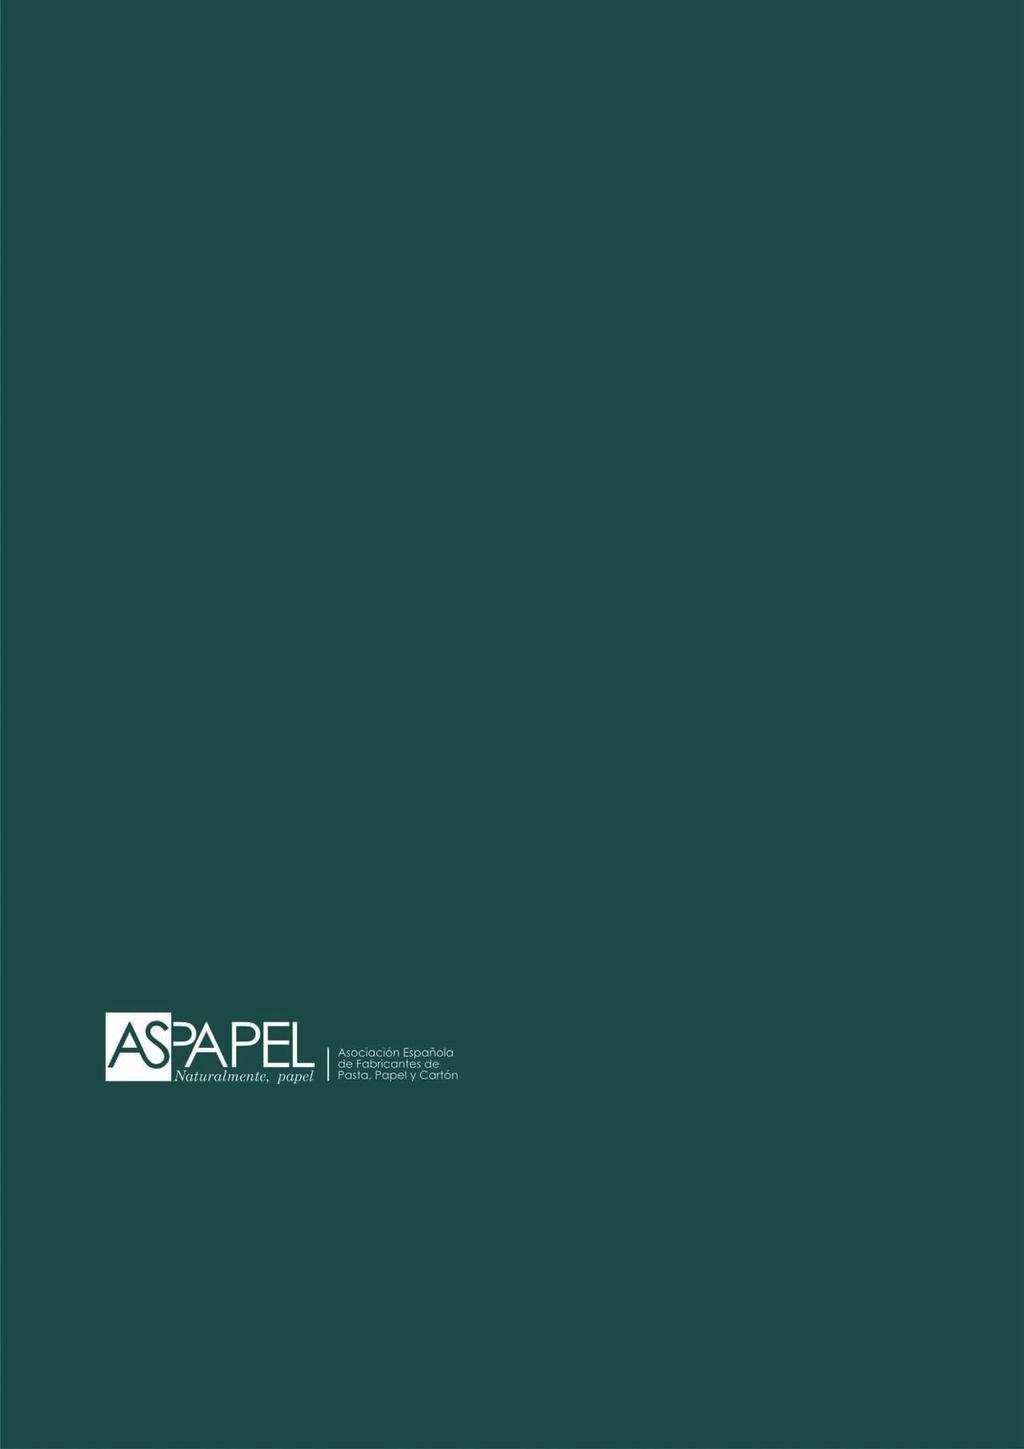 Más información El programa completo y los detalles organizativos de cada curso y seminario, están disponibles con un mes de antelación en la sección de Formación de la web de ASPAPEL (www.aspapel.